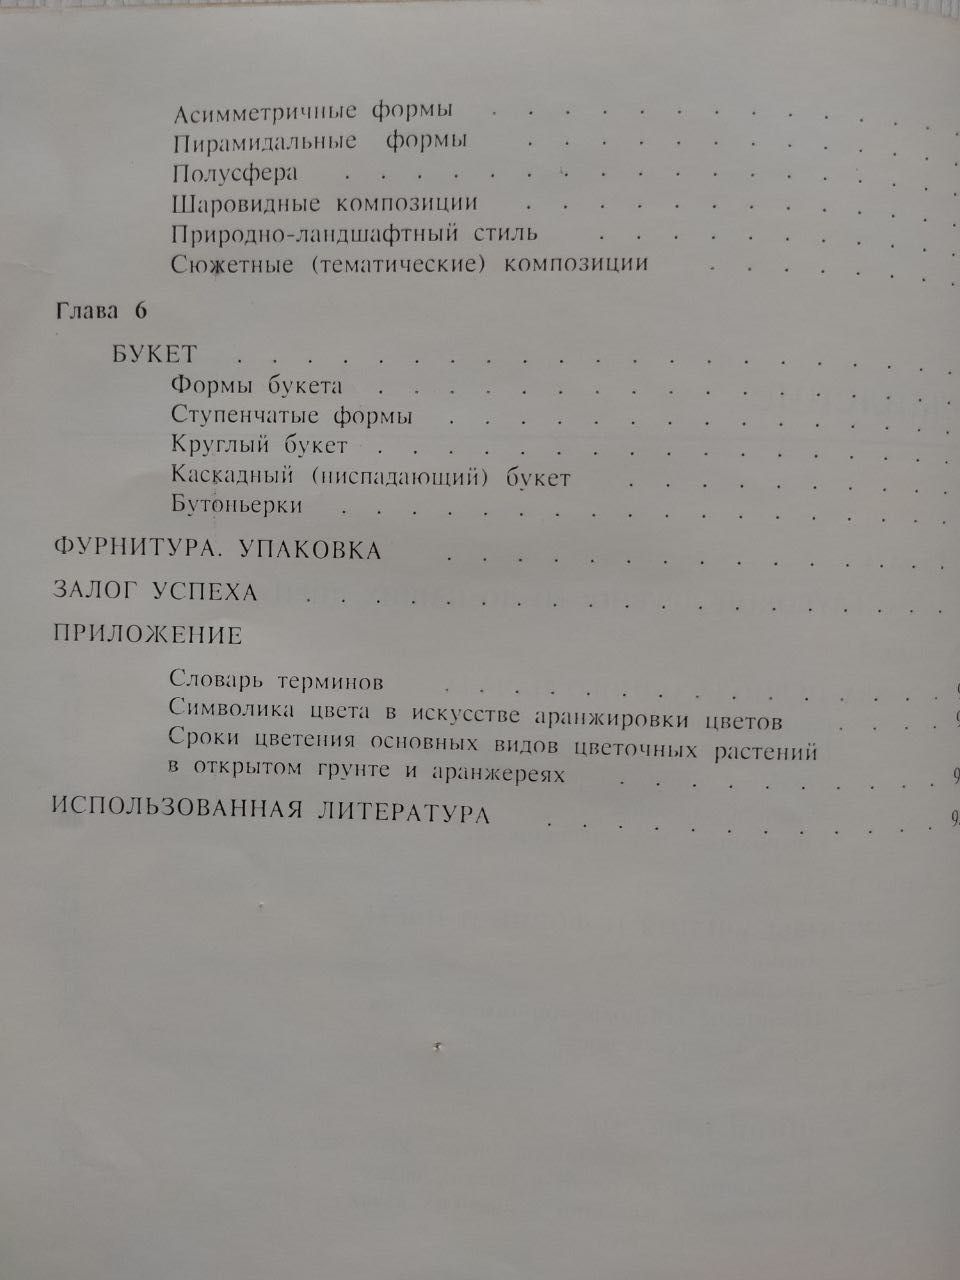 Искусство цветов под редакцией Г. Корниенко, И. Добруцкий.